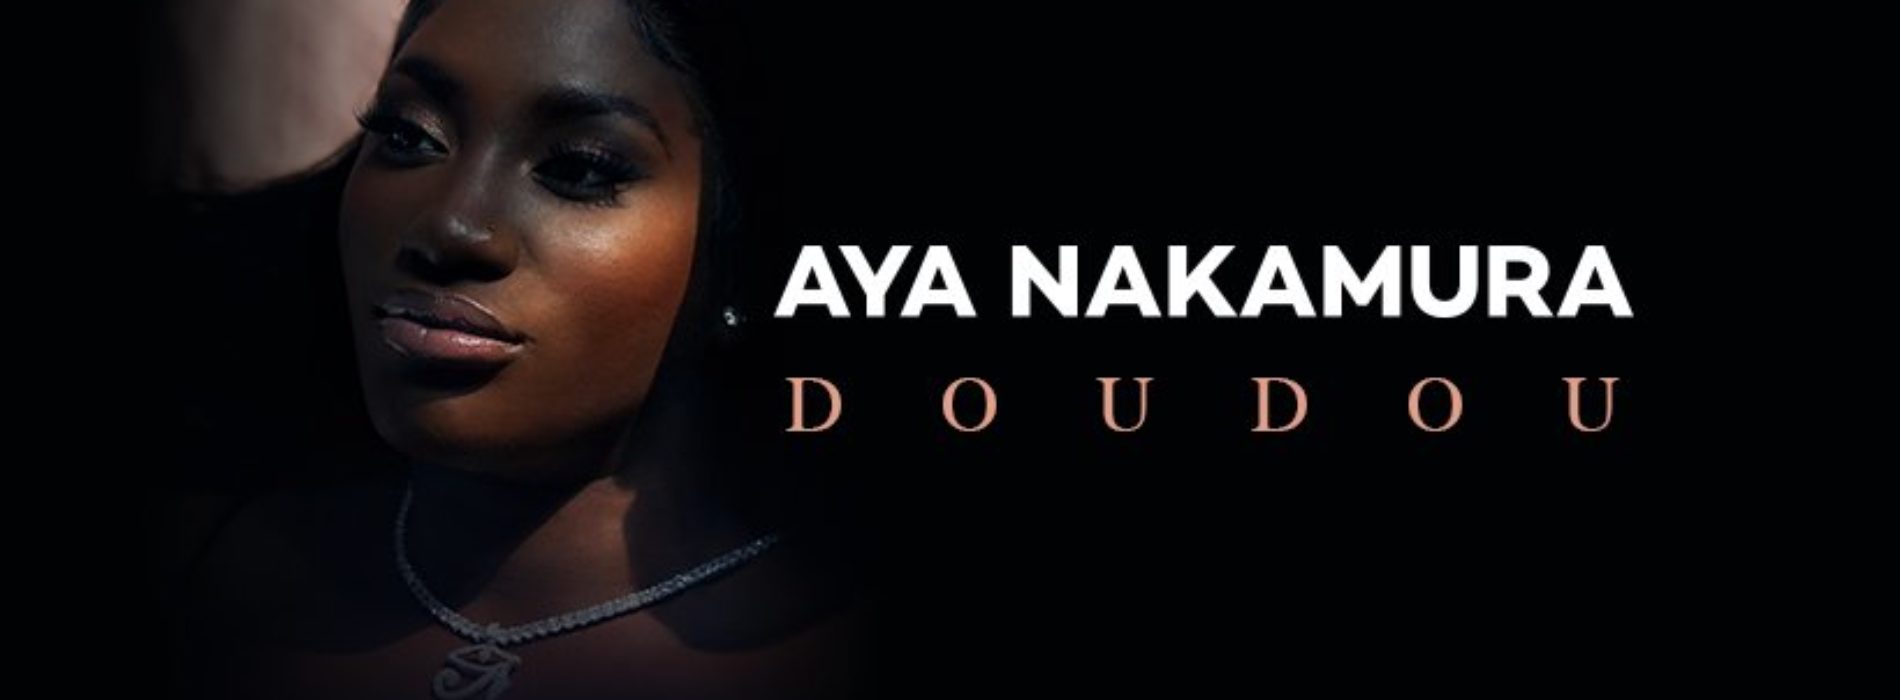 Aya Nakamura – Doudou (Clip officiel) – Octobre 2020